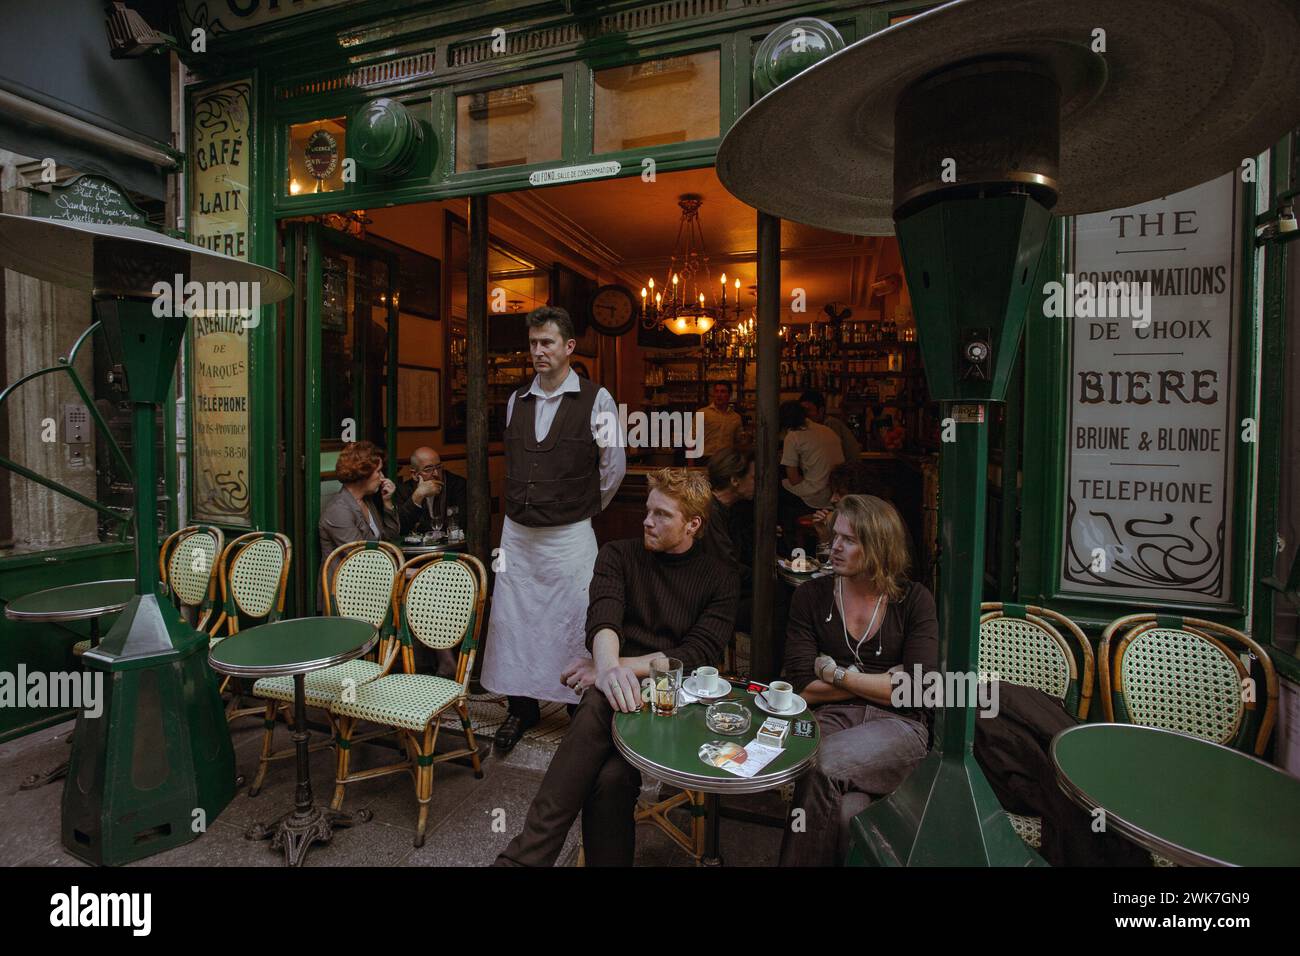 FRANCE / IIe-de-France / Paris / le Marais / ces amis savent que le meilleur endroit pour voir Paris et Parisiens est un café en plein air bien placé. Banque D'Images